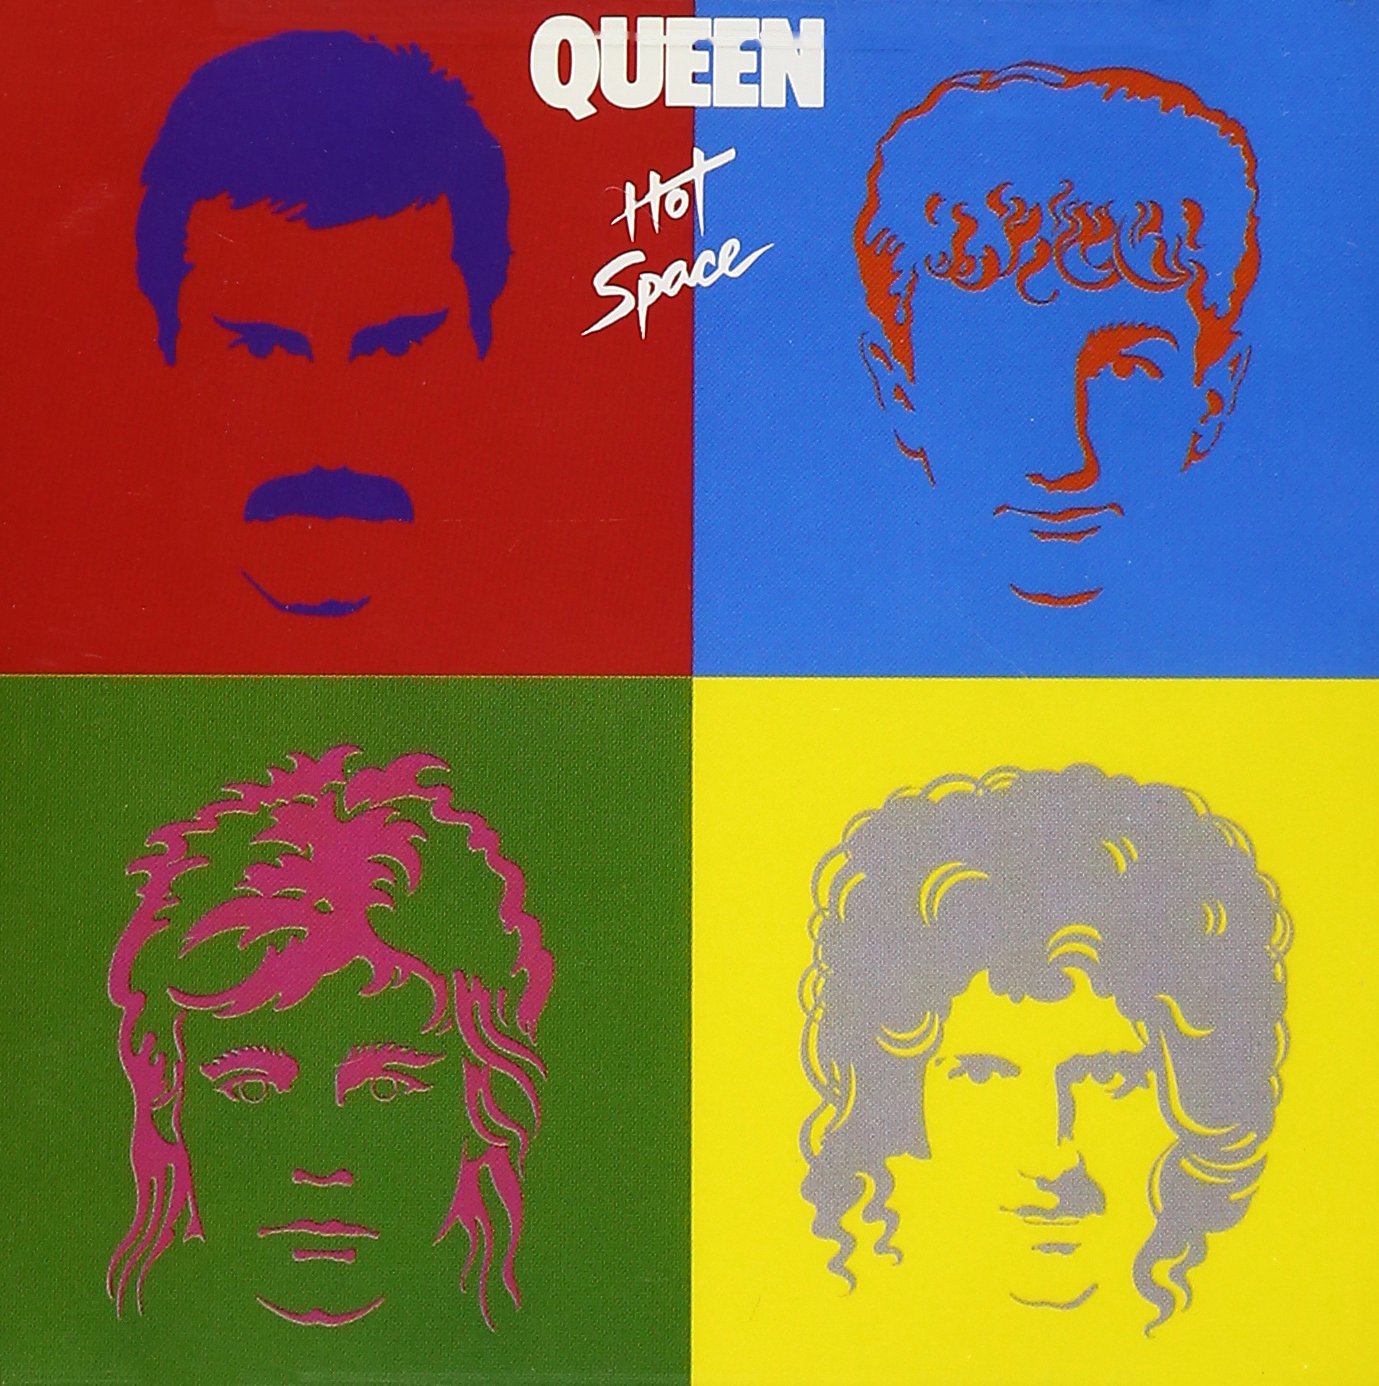 Queen - Hot Space (Album Cover)